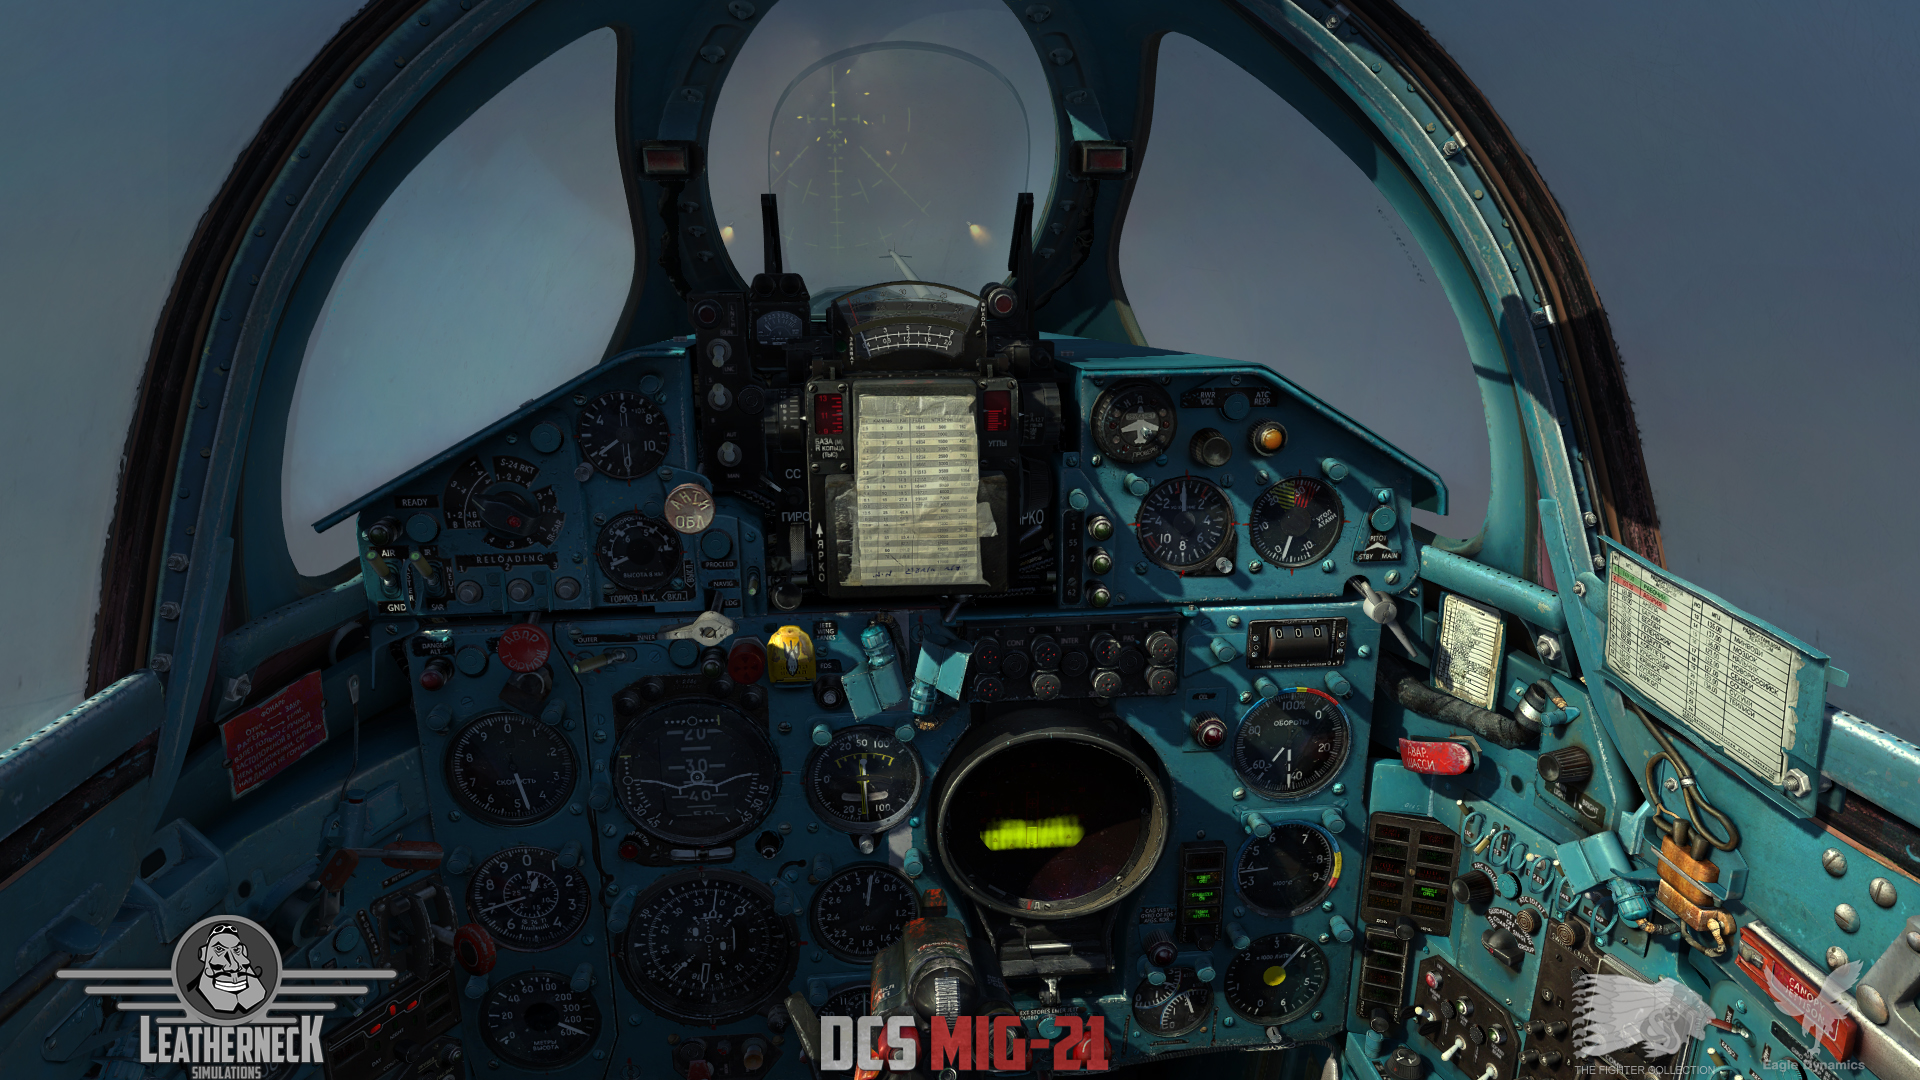 Dcs Mig 21 Cockpit - HD Wallpaper 